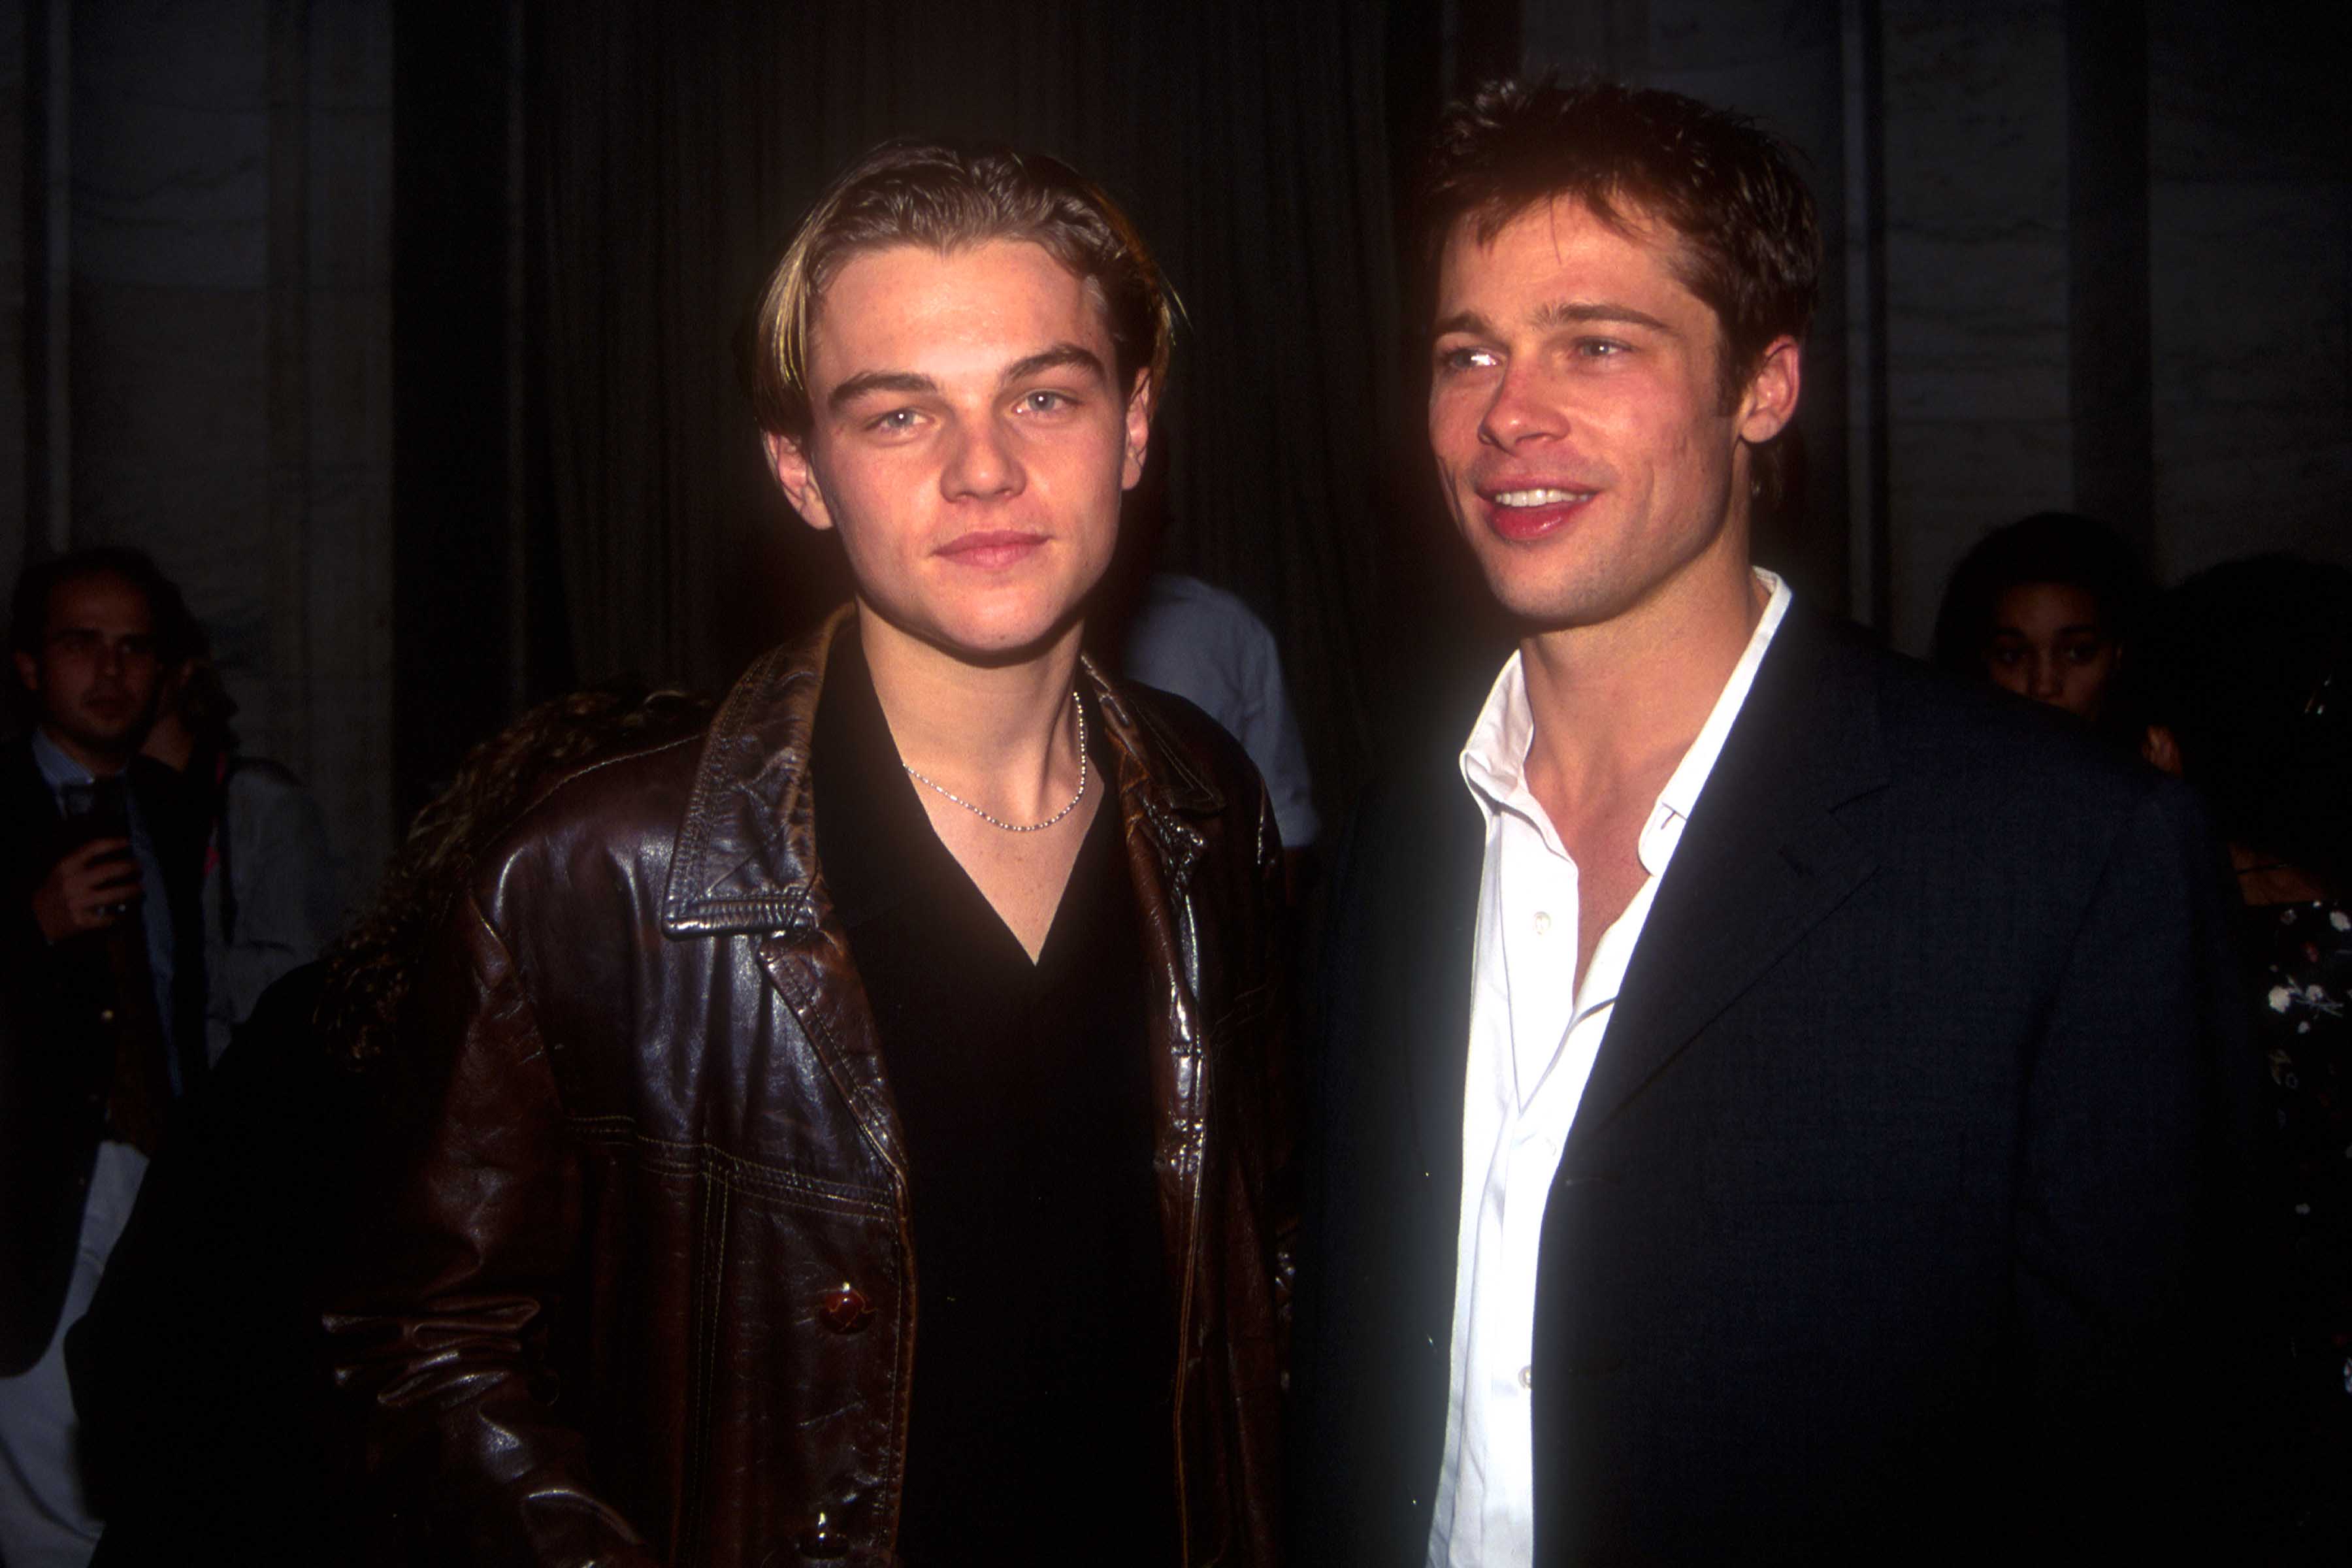 Leonardo DiCaprio and Brad Pitt at an event on September 15, 1995